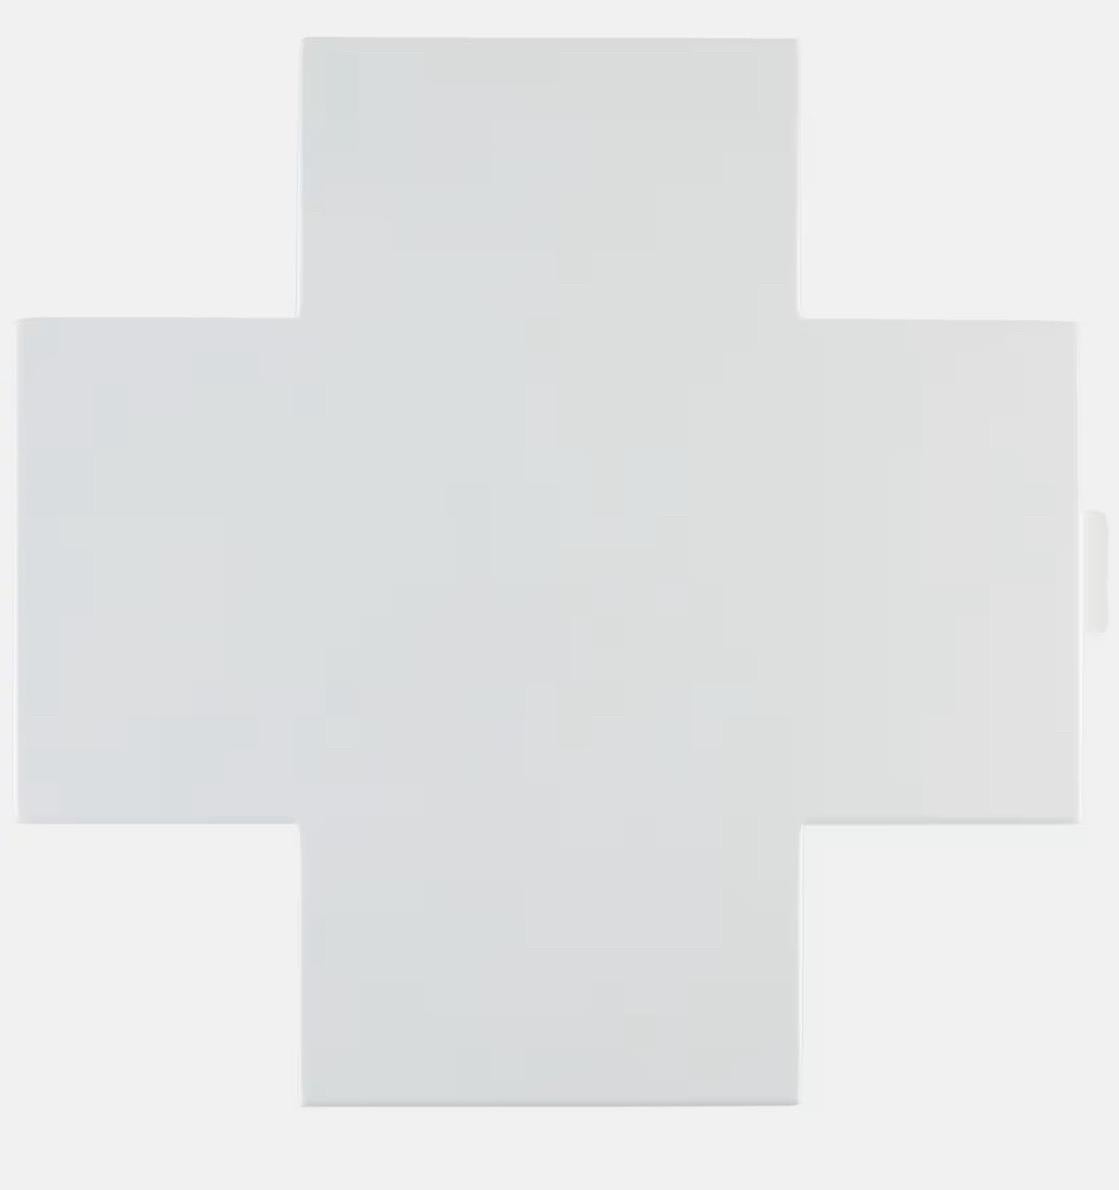 Cappellini Cross Medizinschrank in Weiß glänzend, Thomas Eriksson, Italien, 1990er Jahre.  

Thomas Erikssons Cross von Cappellini ist Aufbewahrungslösung und Wandkunst zugleich und ein unübersehbares Statement mit nachhaltiger Wirkung. Der aus